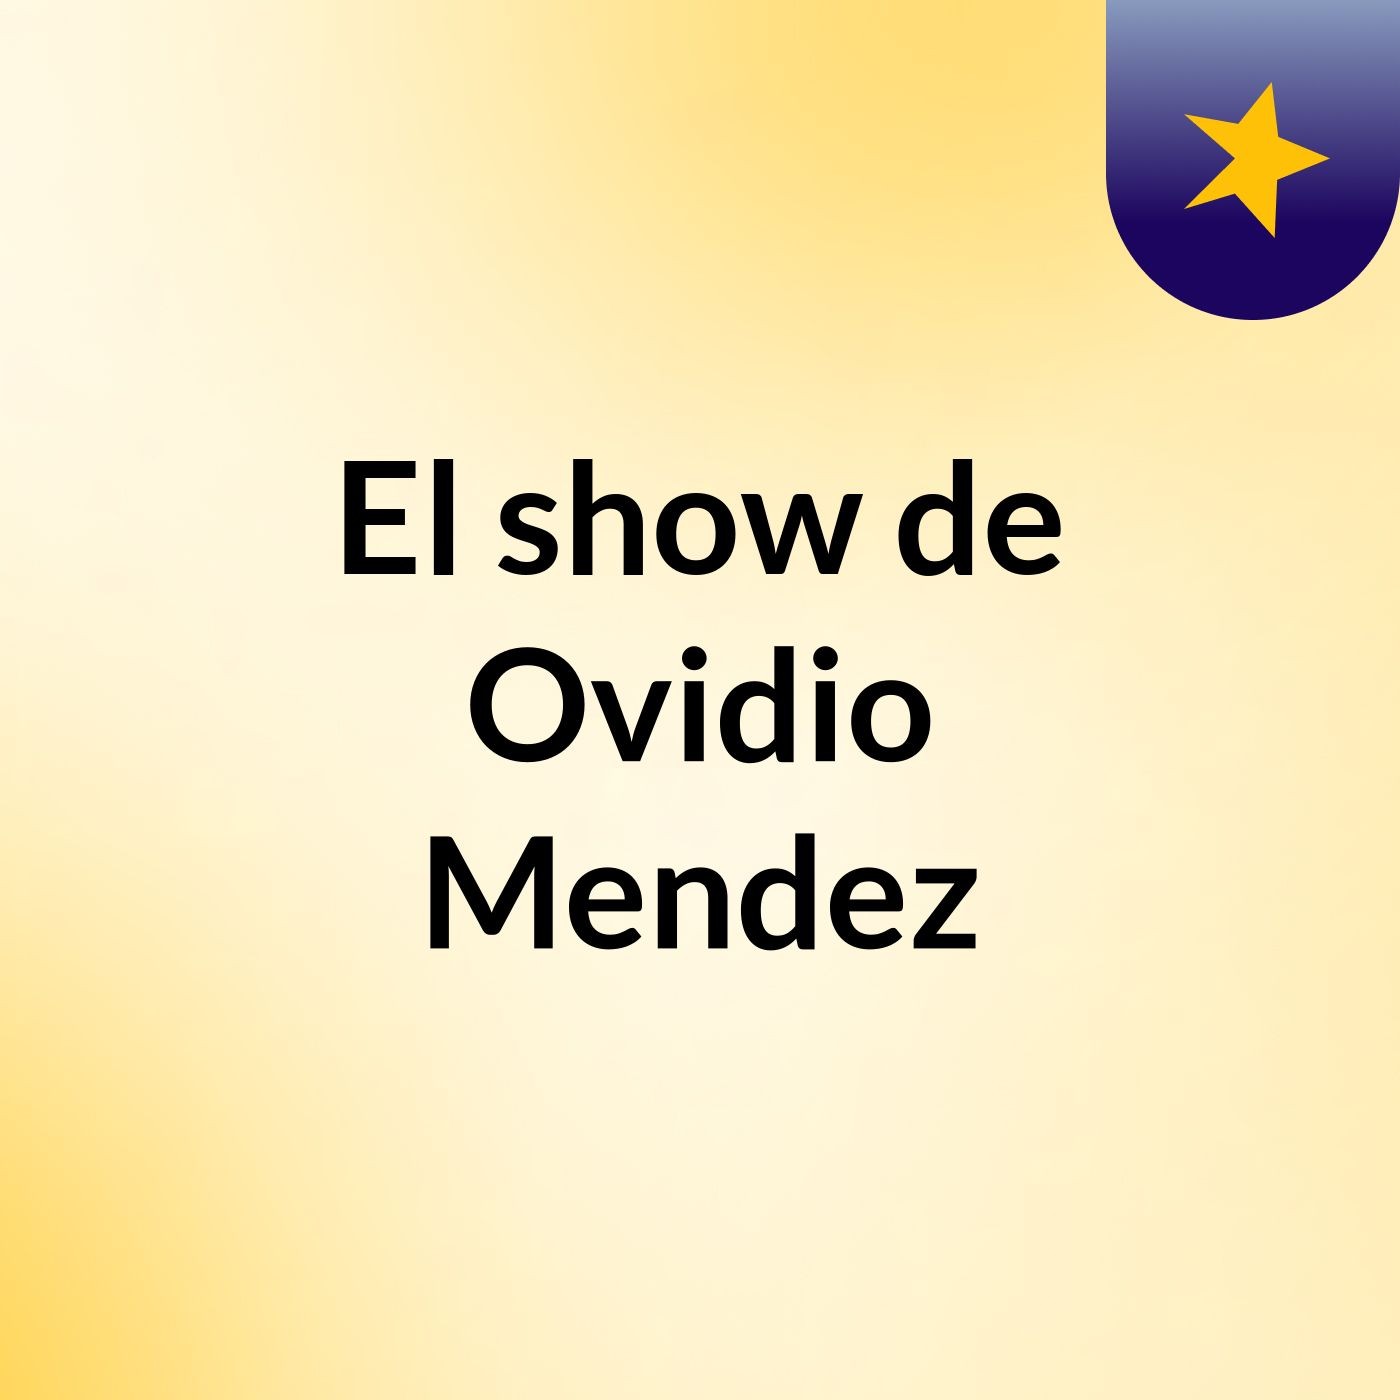 El show de Ovidio Mendez